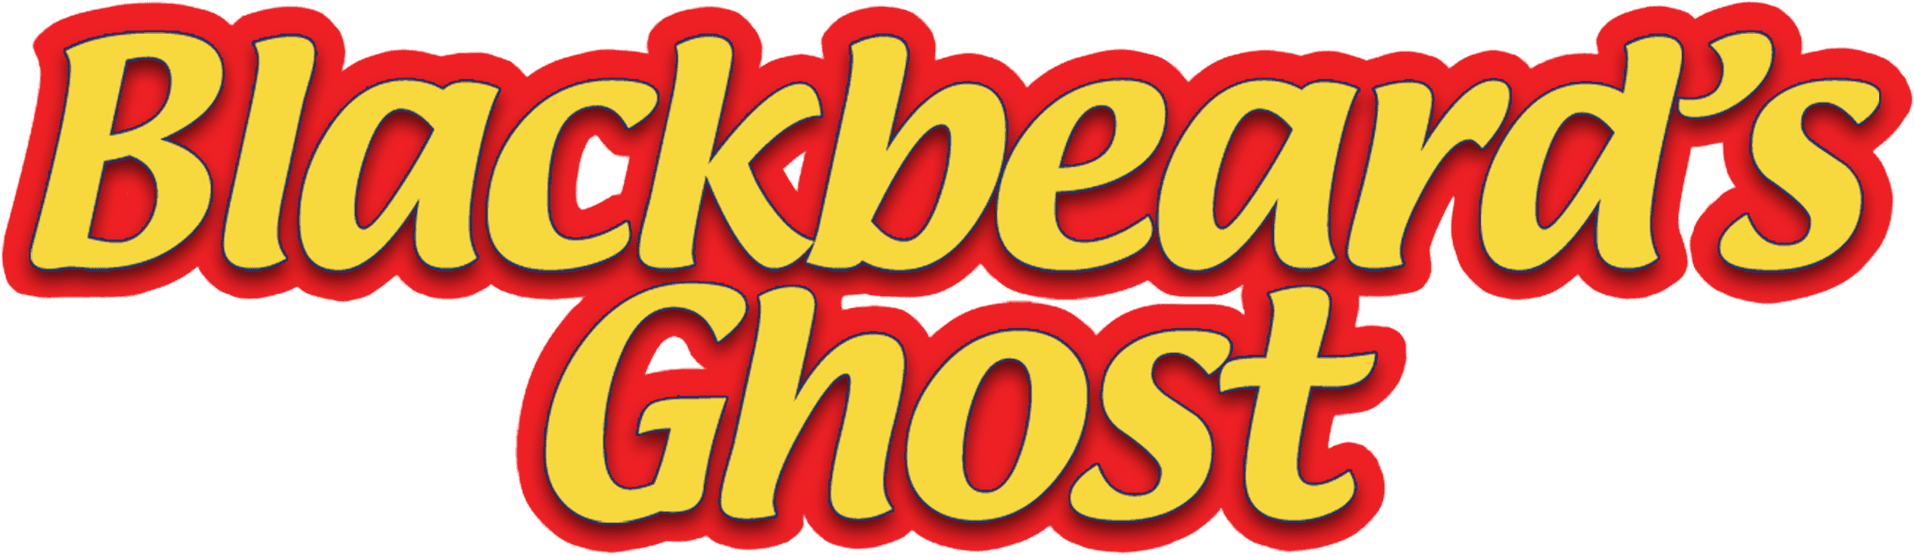 Blackbeard's Ghost logo